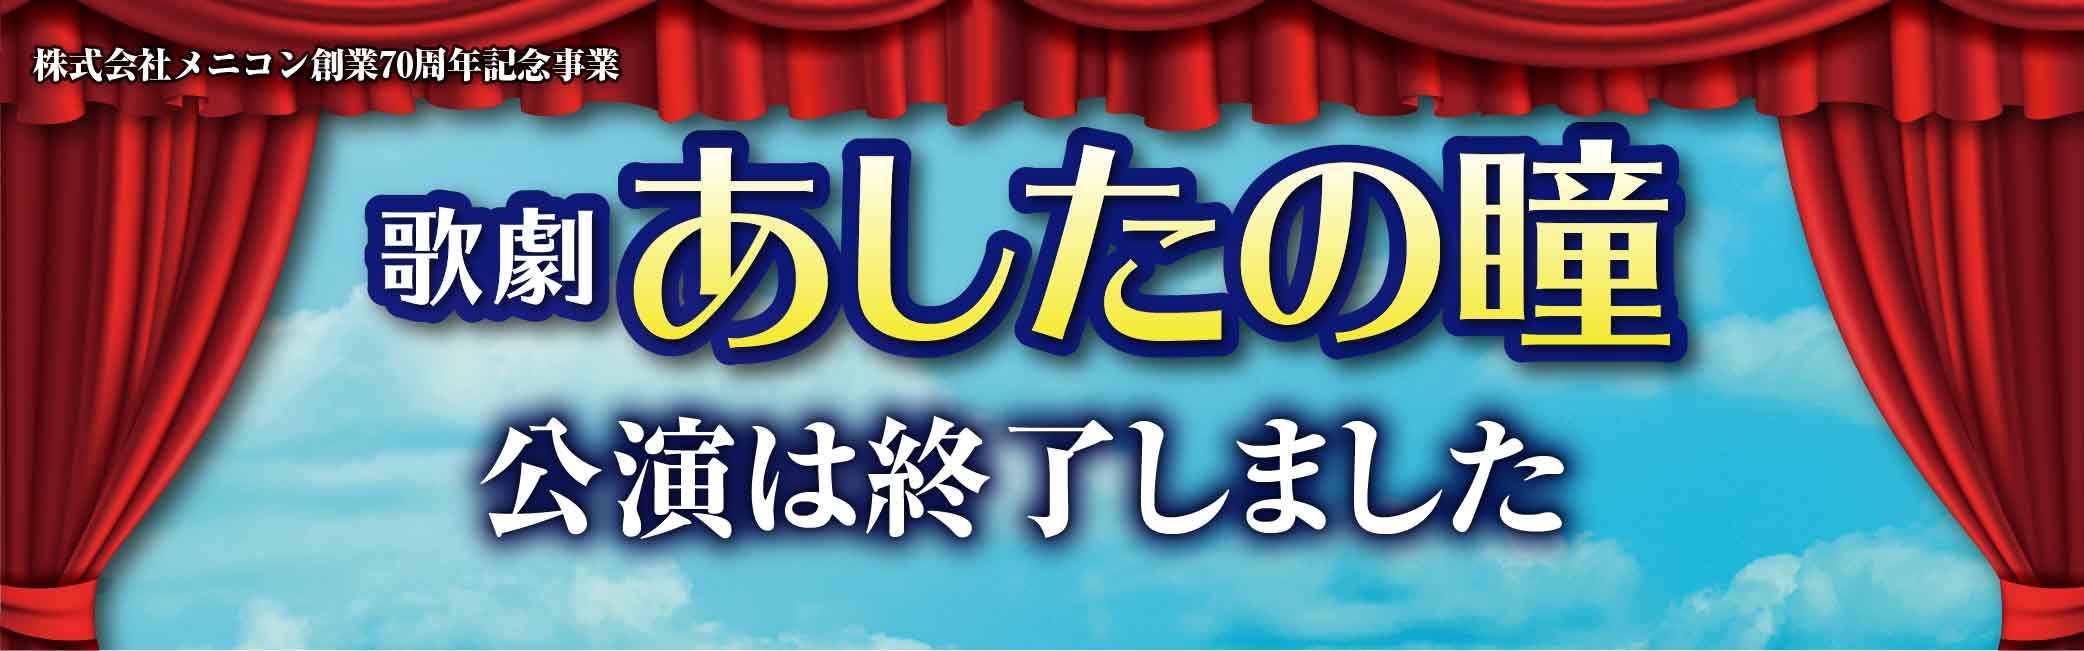 歌劇 あしたの瞳 2021年9月16日 木曜日 愛知県芸術劇場大ホールにて上演決定